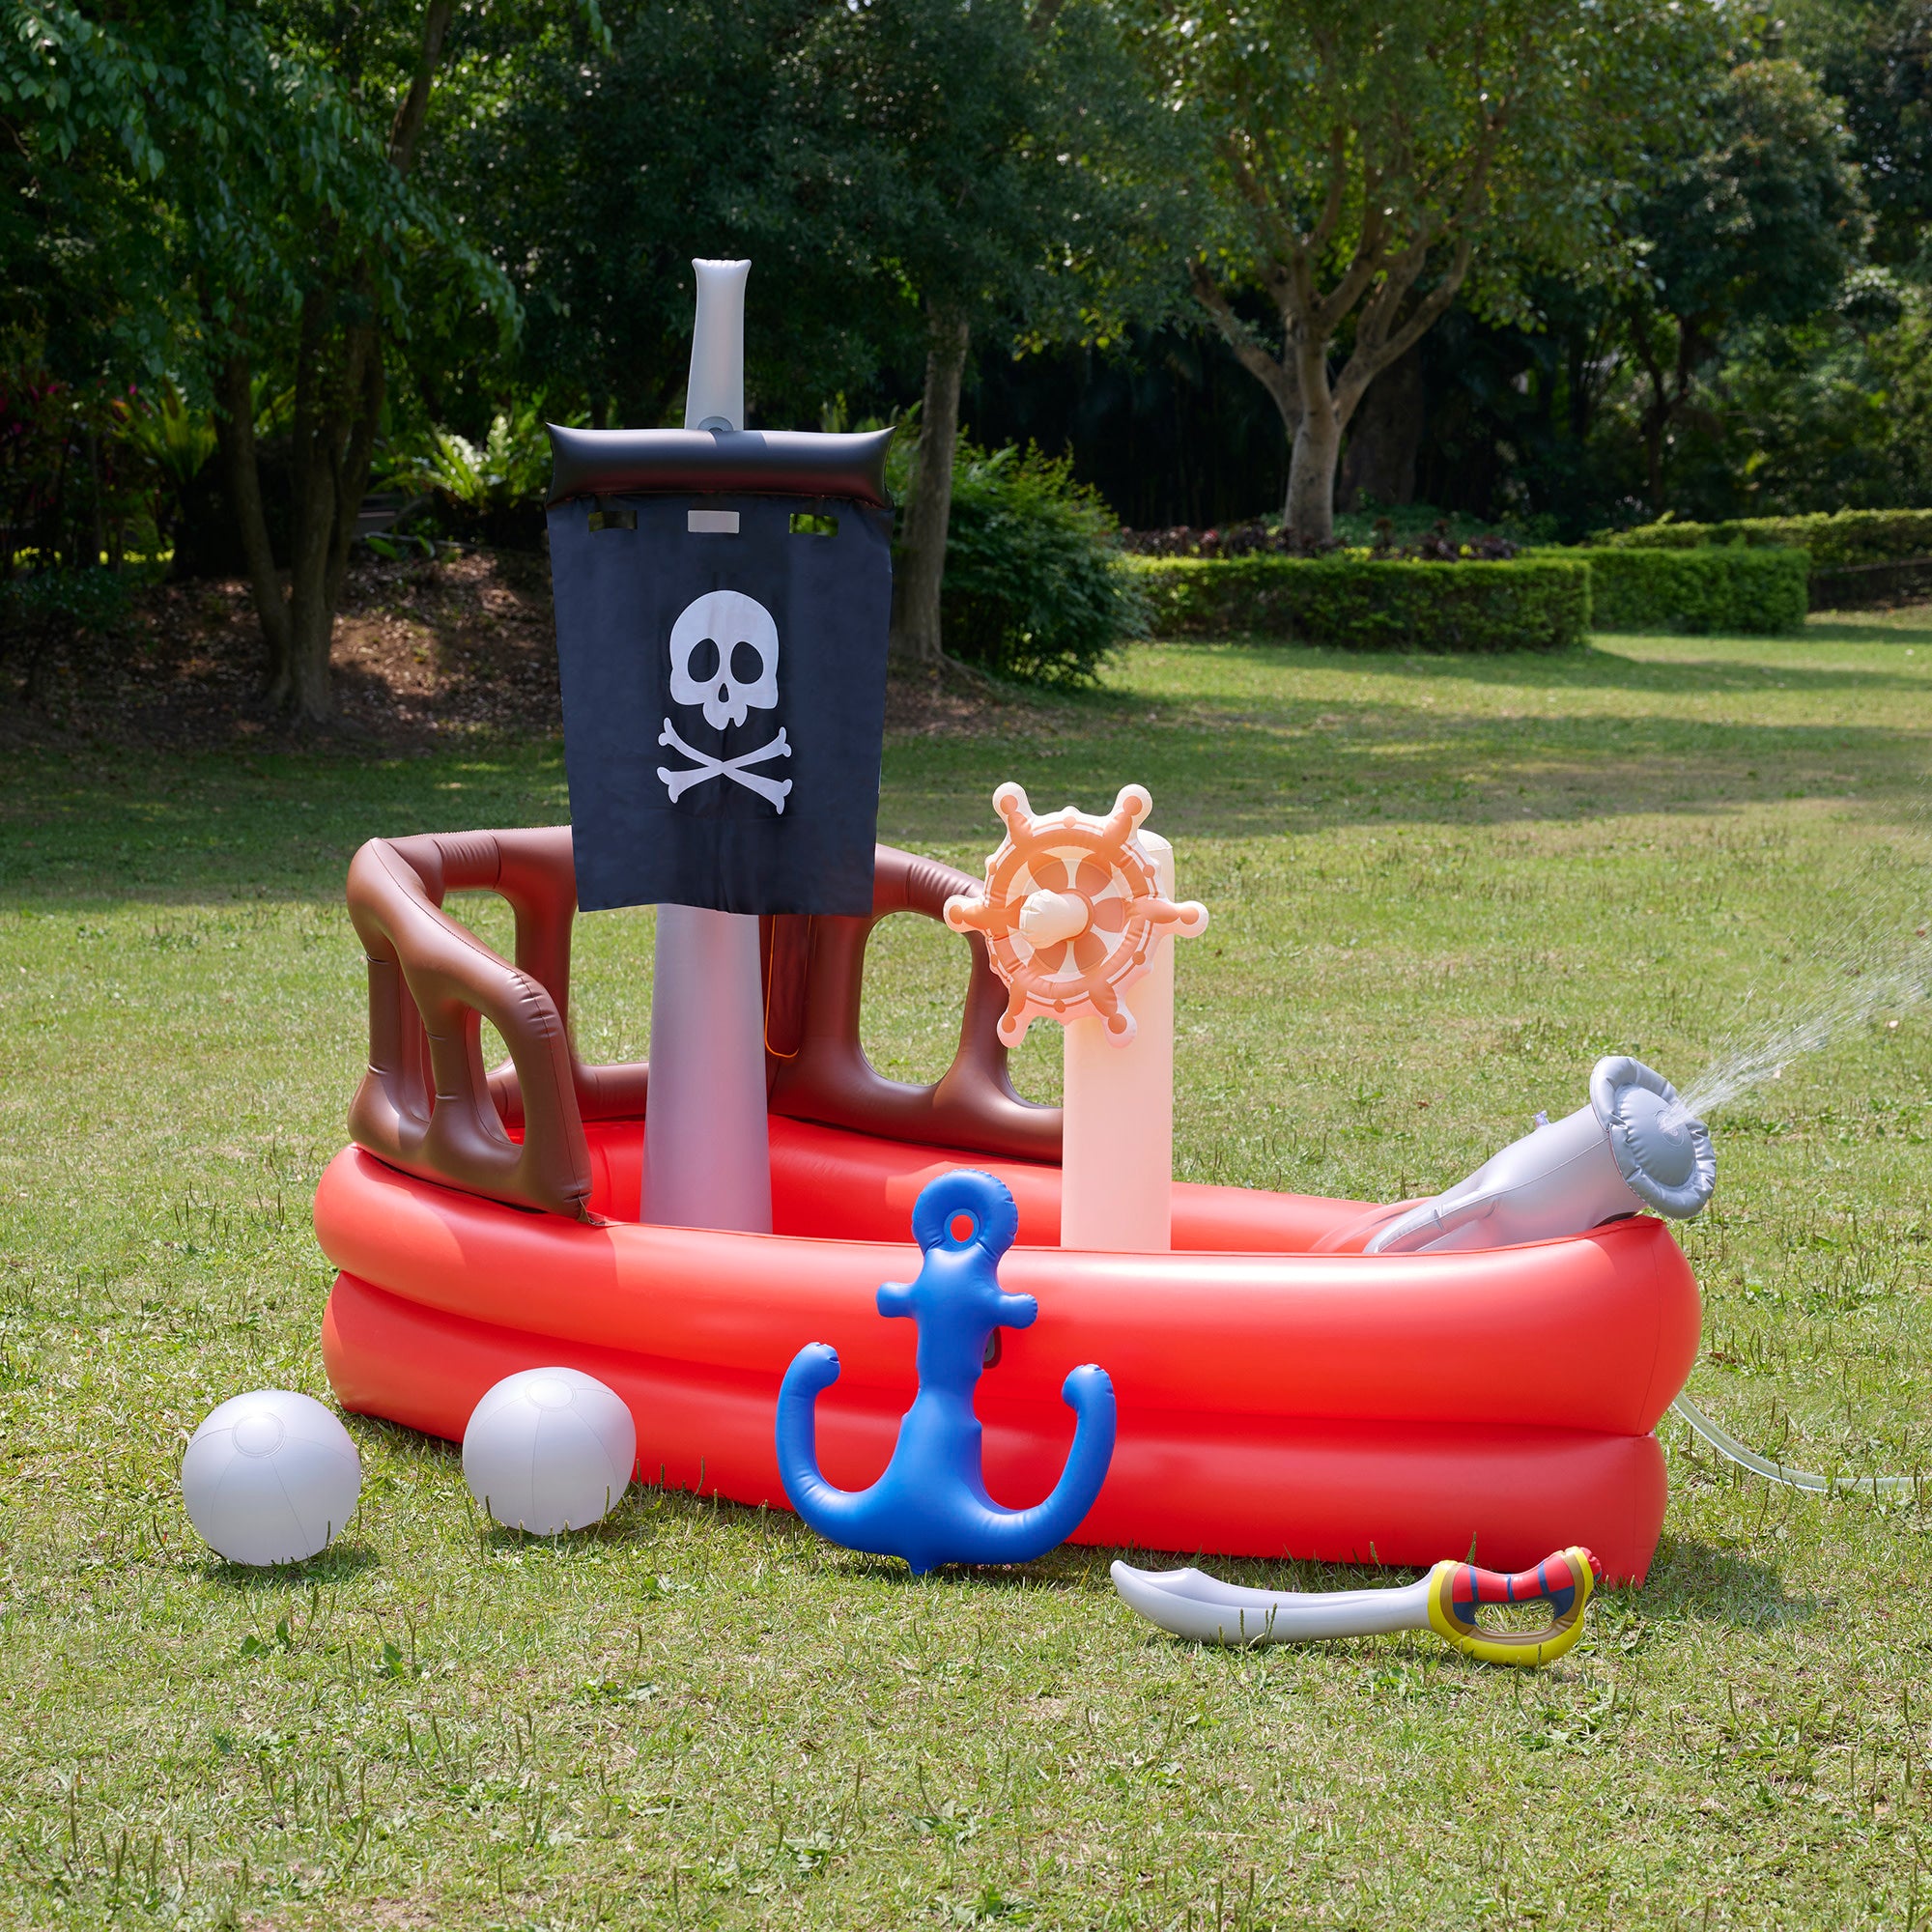 Teamson Kids - Water Fun Pirate boat Inflatable Sprinkler Play